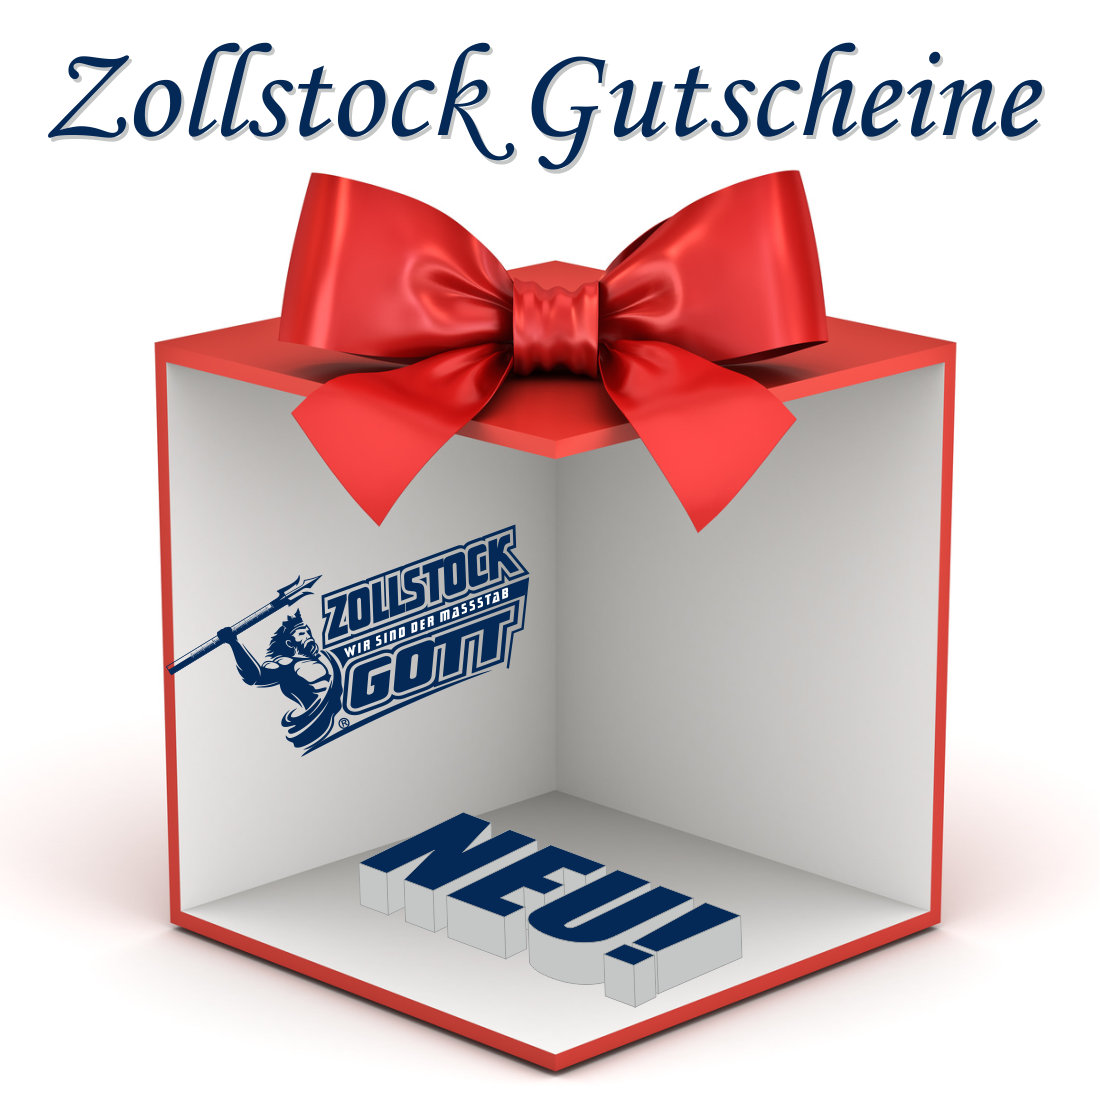 Zollstock Gutscheine